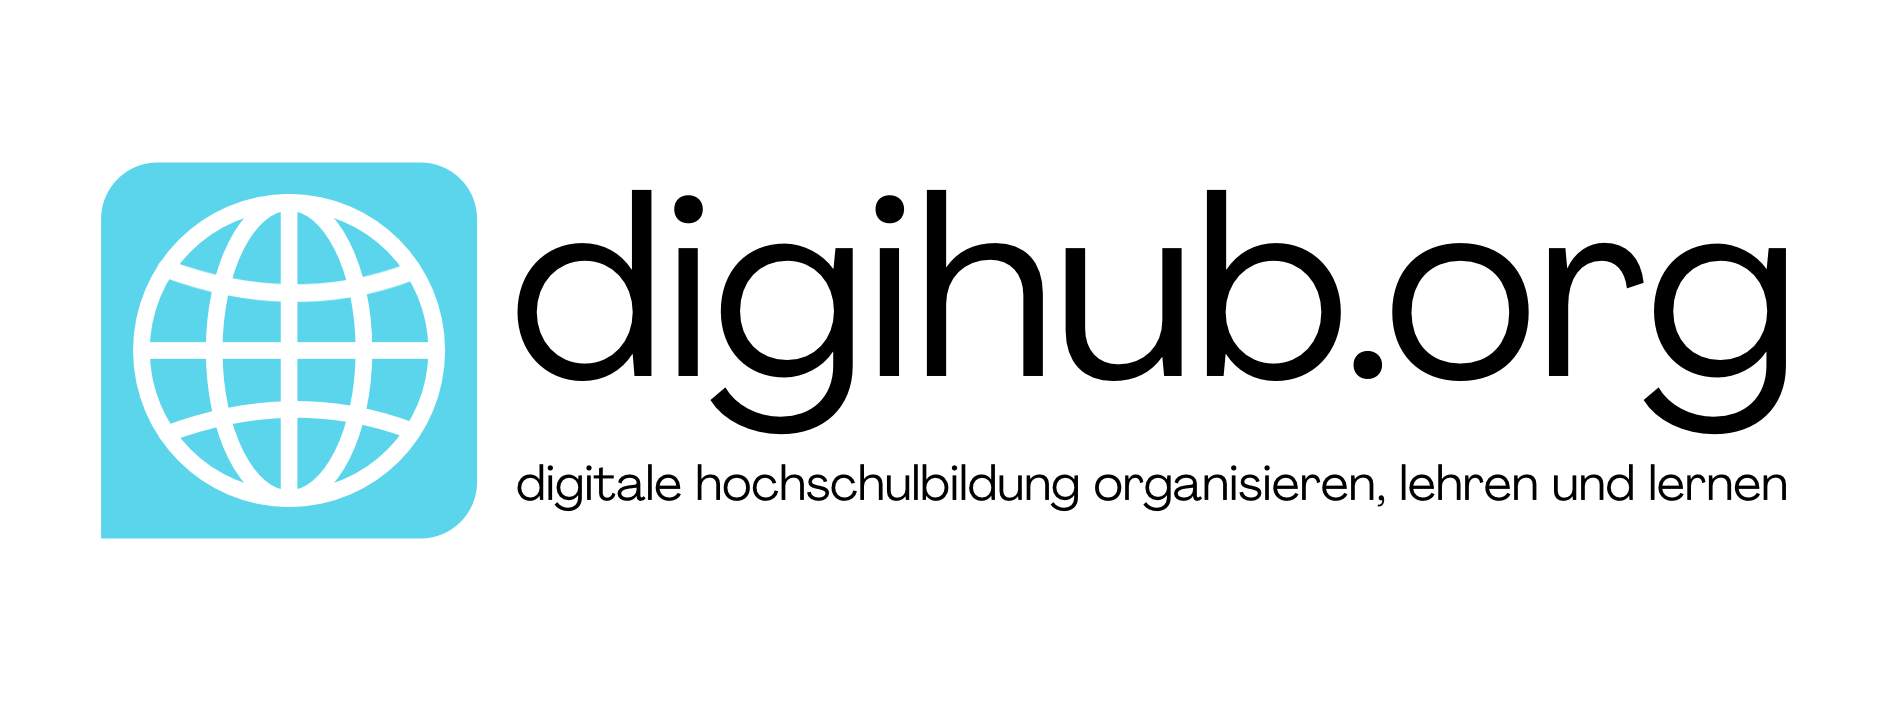 digihub.org logo wei